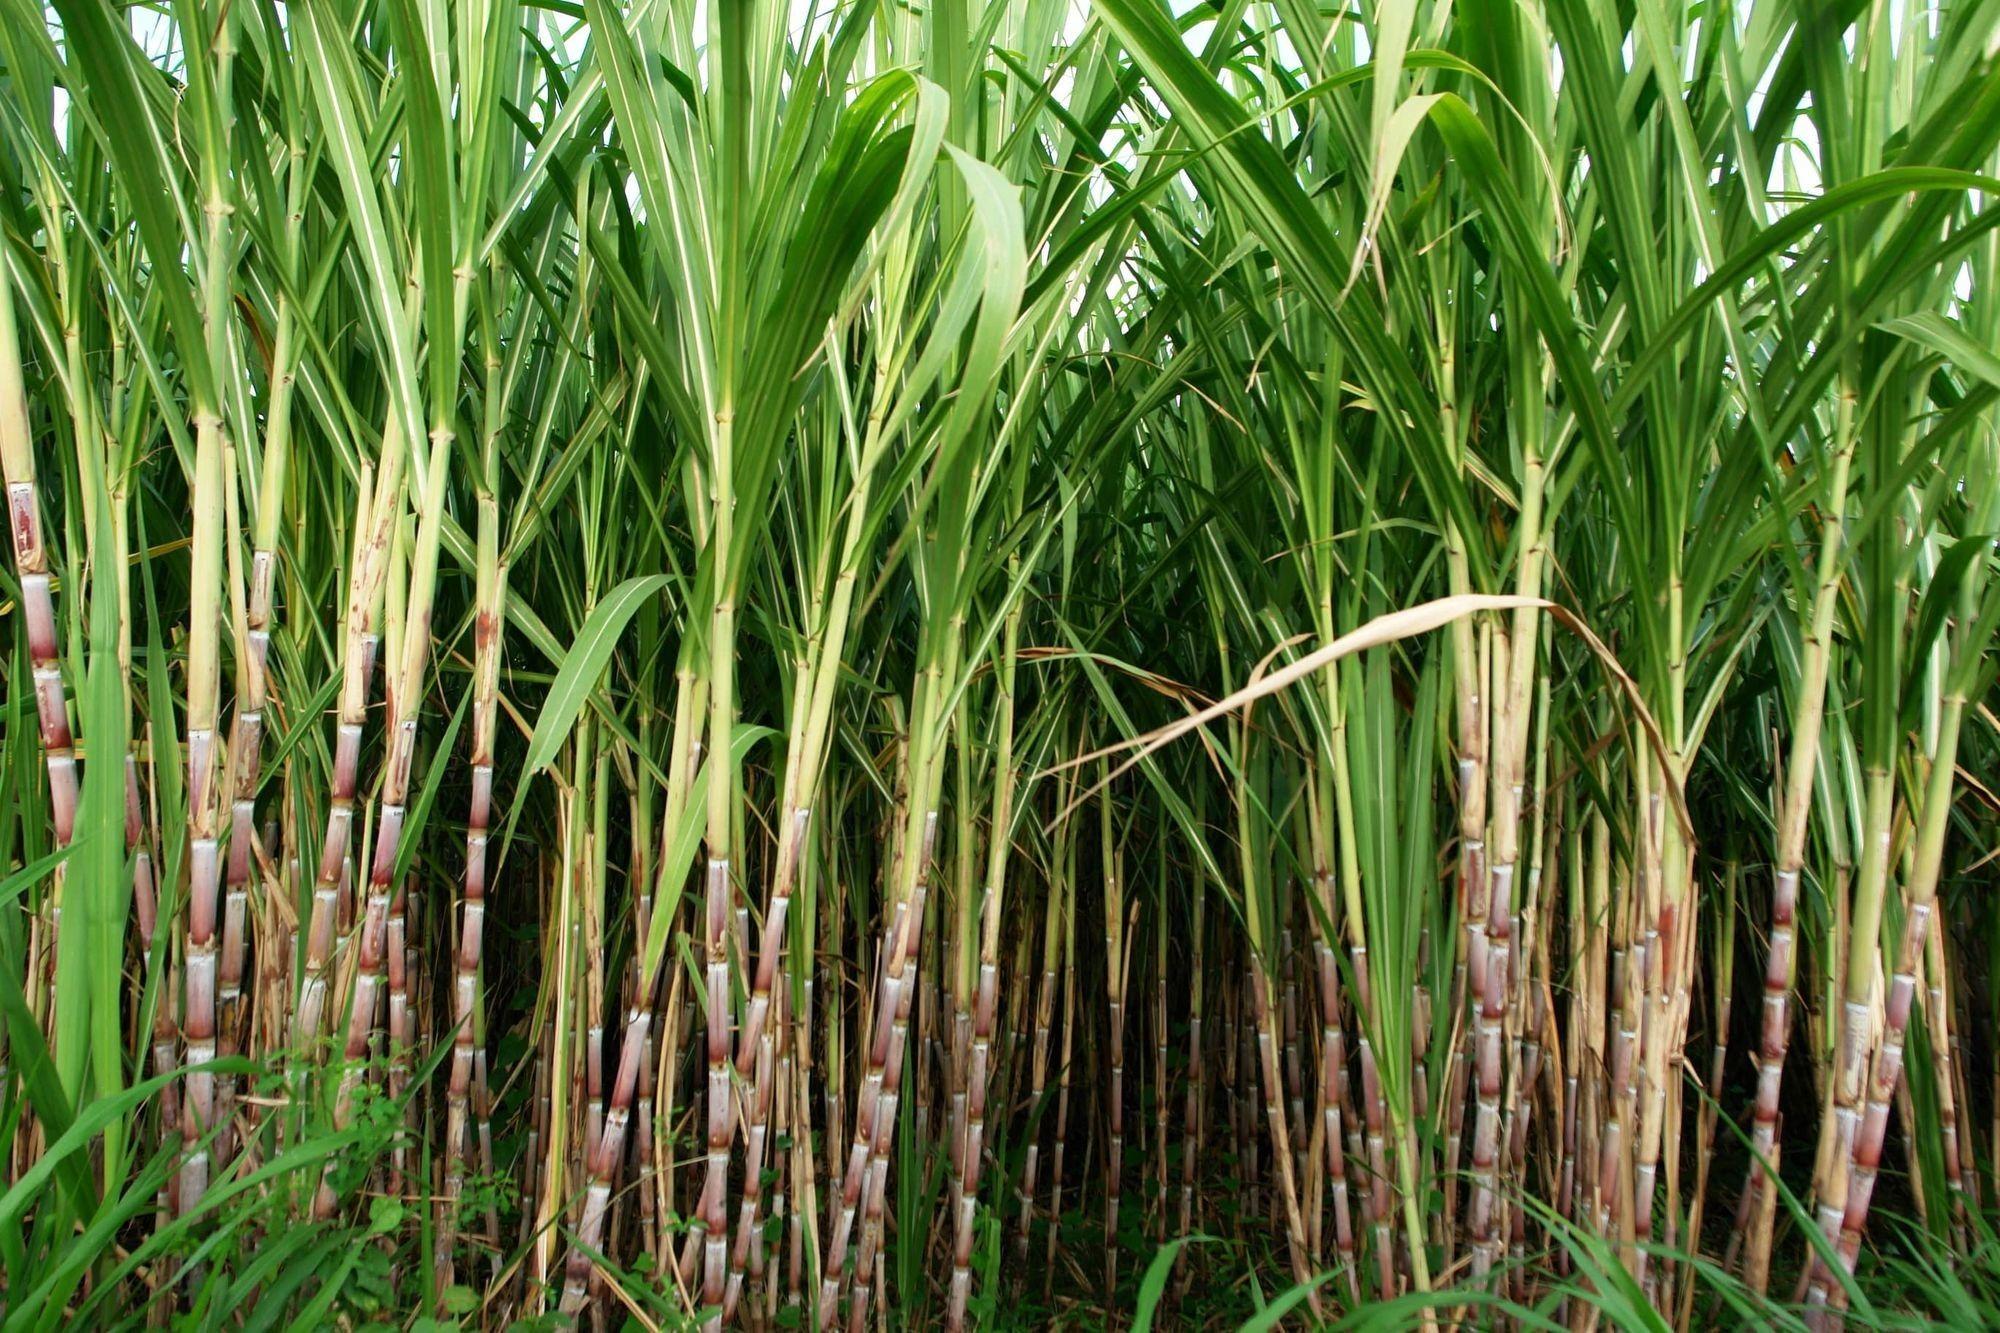 Сахарный тростник районы выращивания